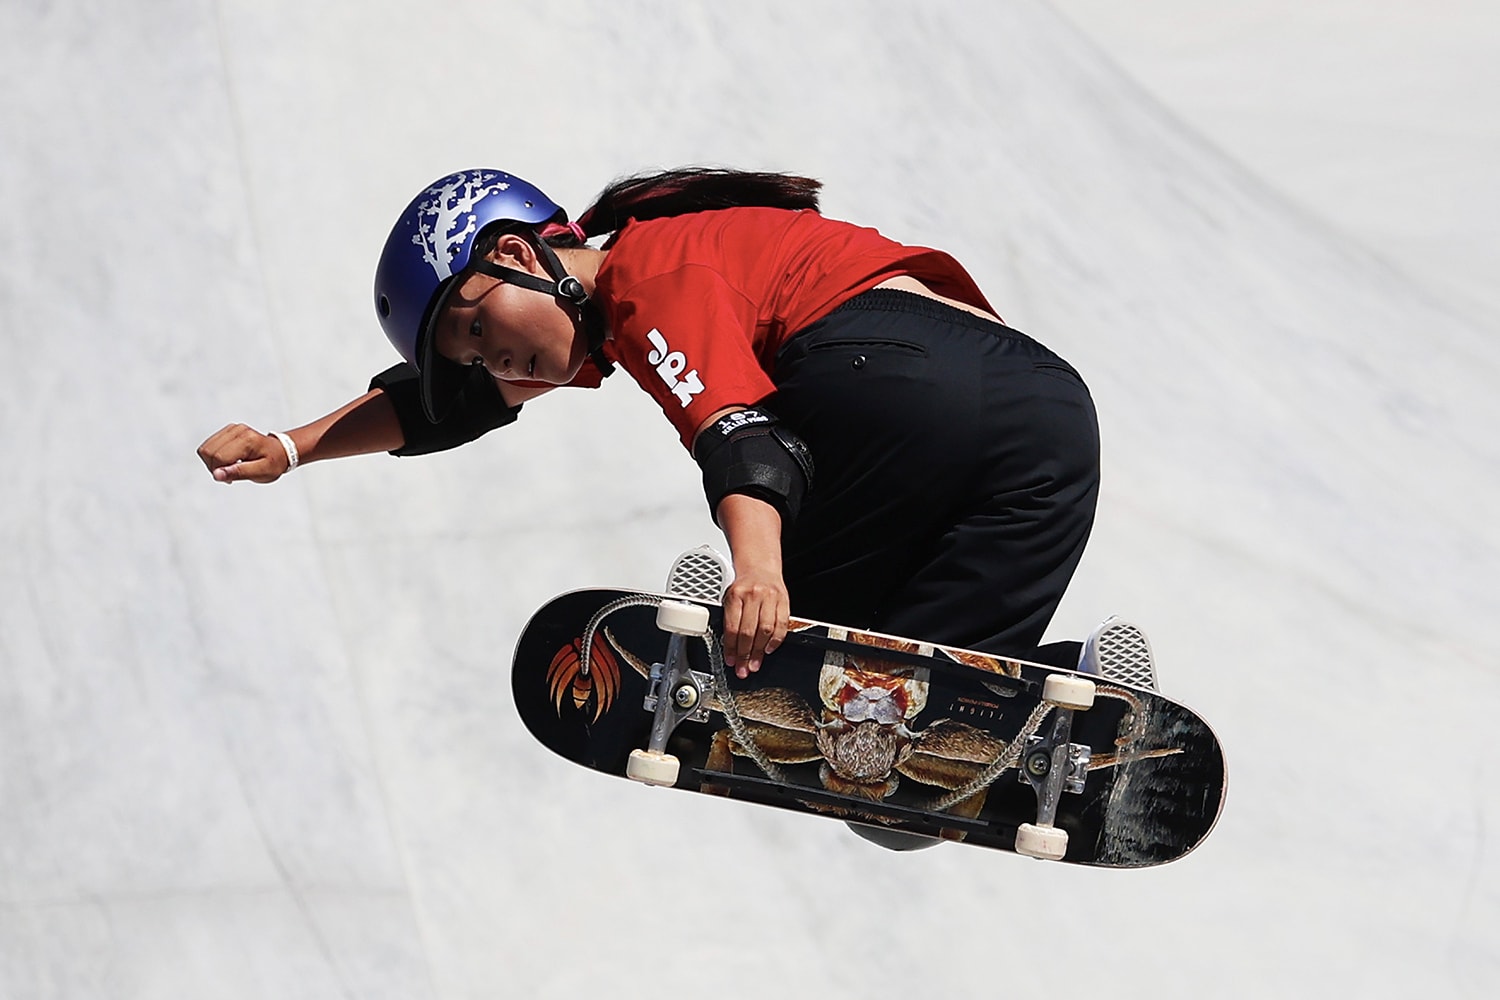 日本滑手四十住櫻、開心那成功奪得東京奧運「女子滑板公園賽」金銀兩牌